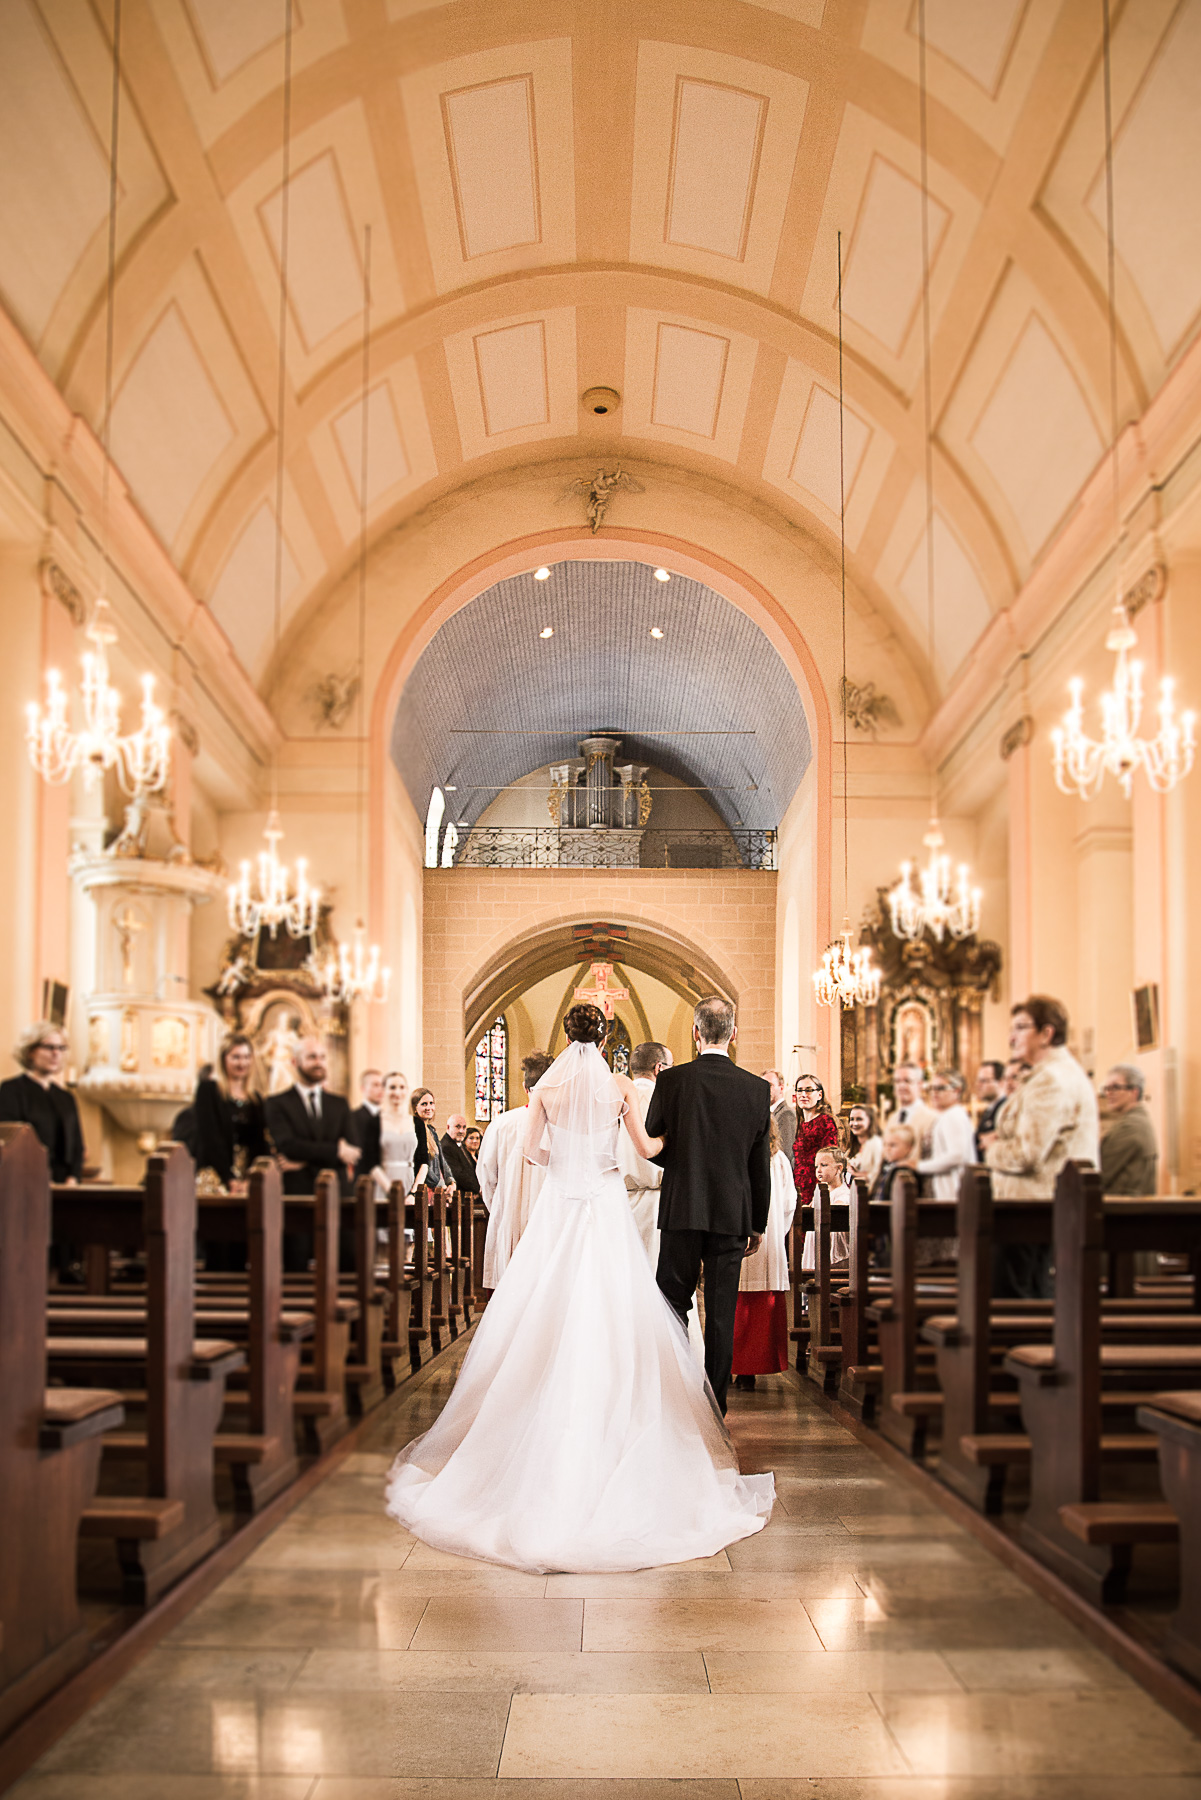 Die Braut betritt den Kirchensaal, geführt durch ihren Vater. Alle Gäste stehen und schauen auf die Braut.